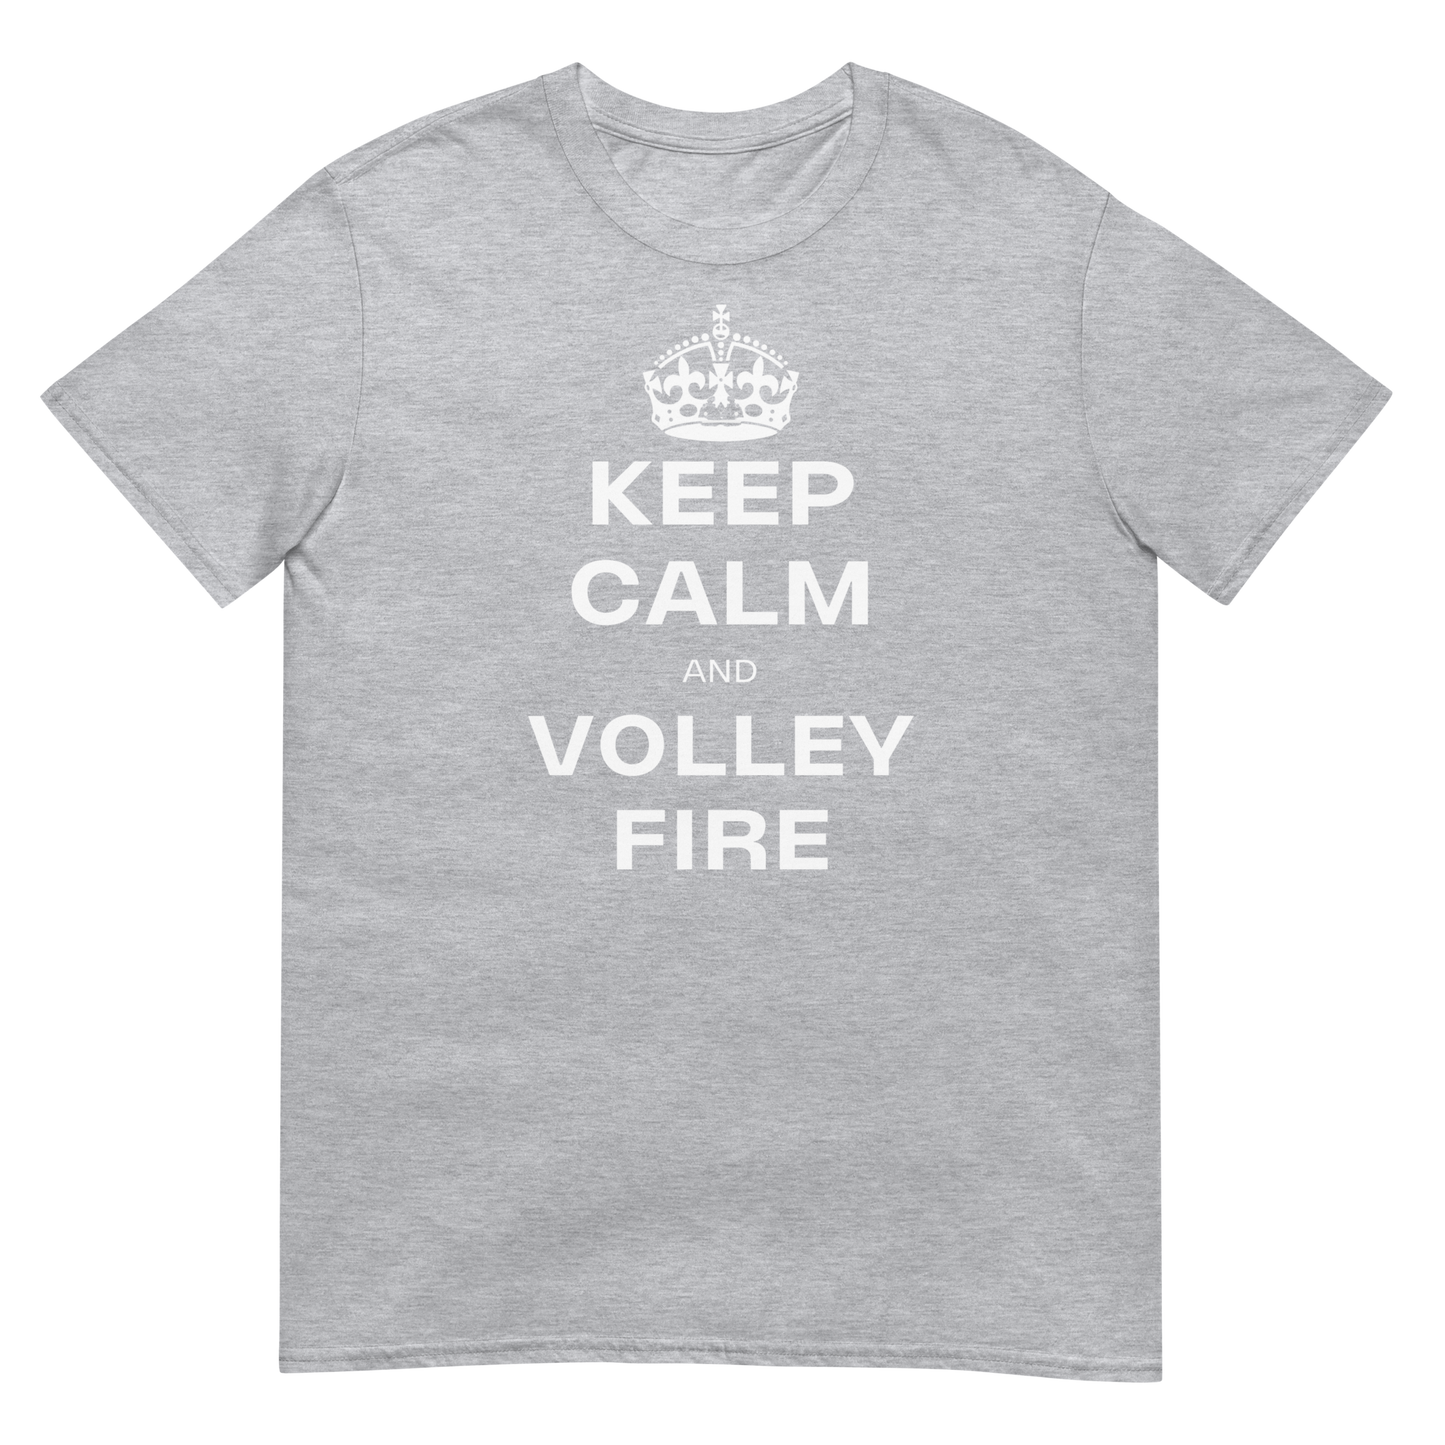 Keep Calm & Volley Fire (t-shirt)